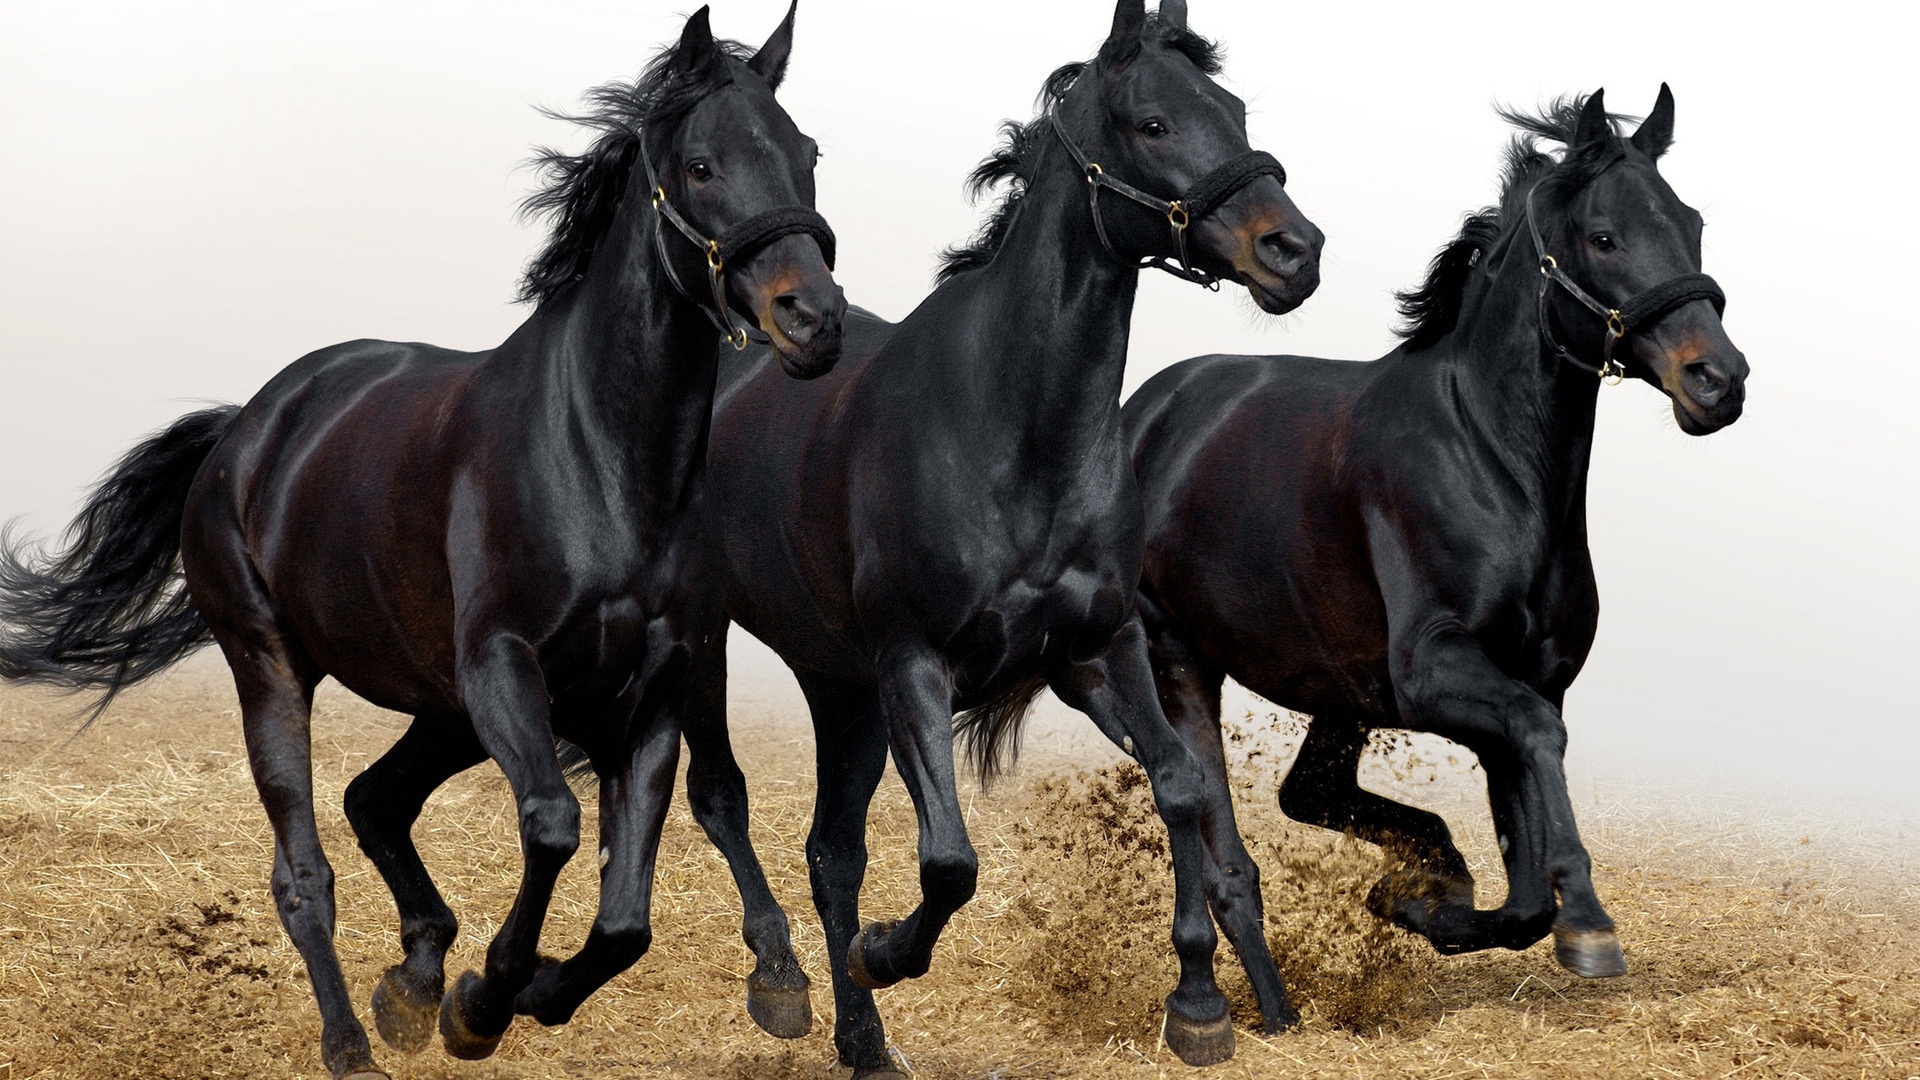 Wallpaper Three Black Horses - 7 Black Horse Running - HD Wallpaper 